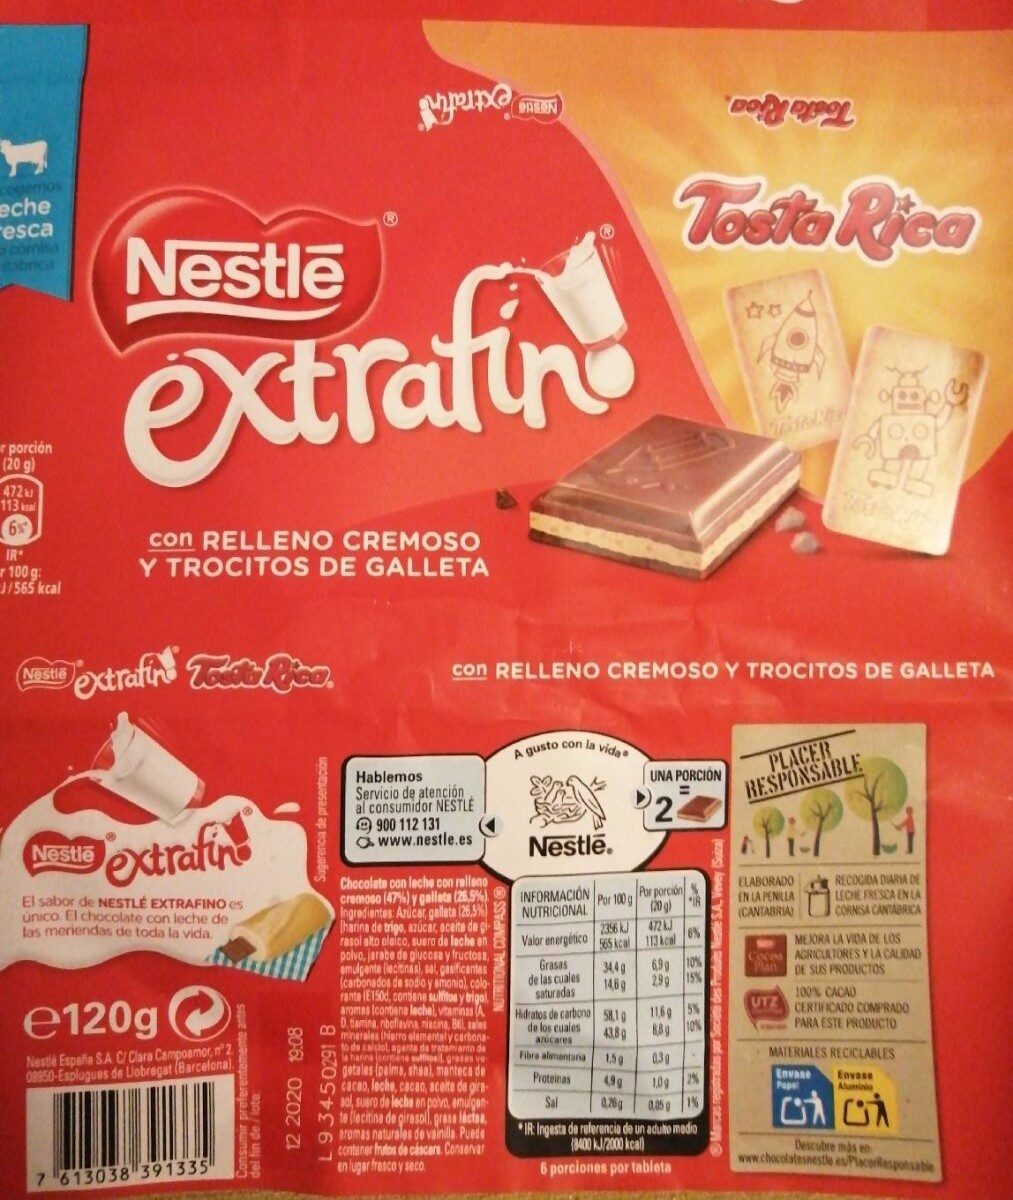 Nestlé extrafino Tosta Rica - Producte - es